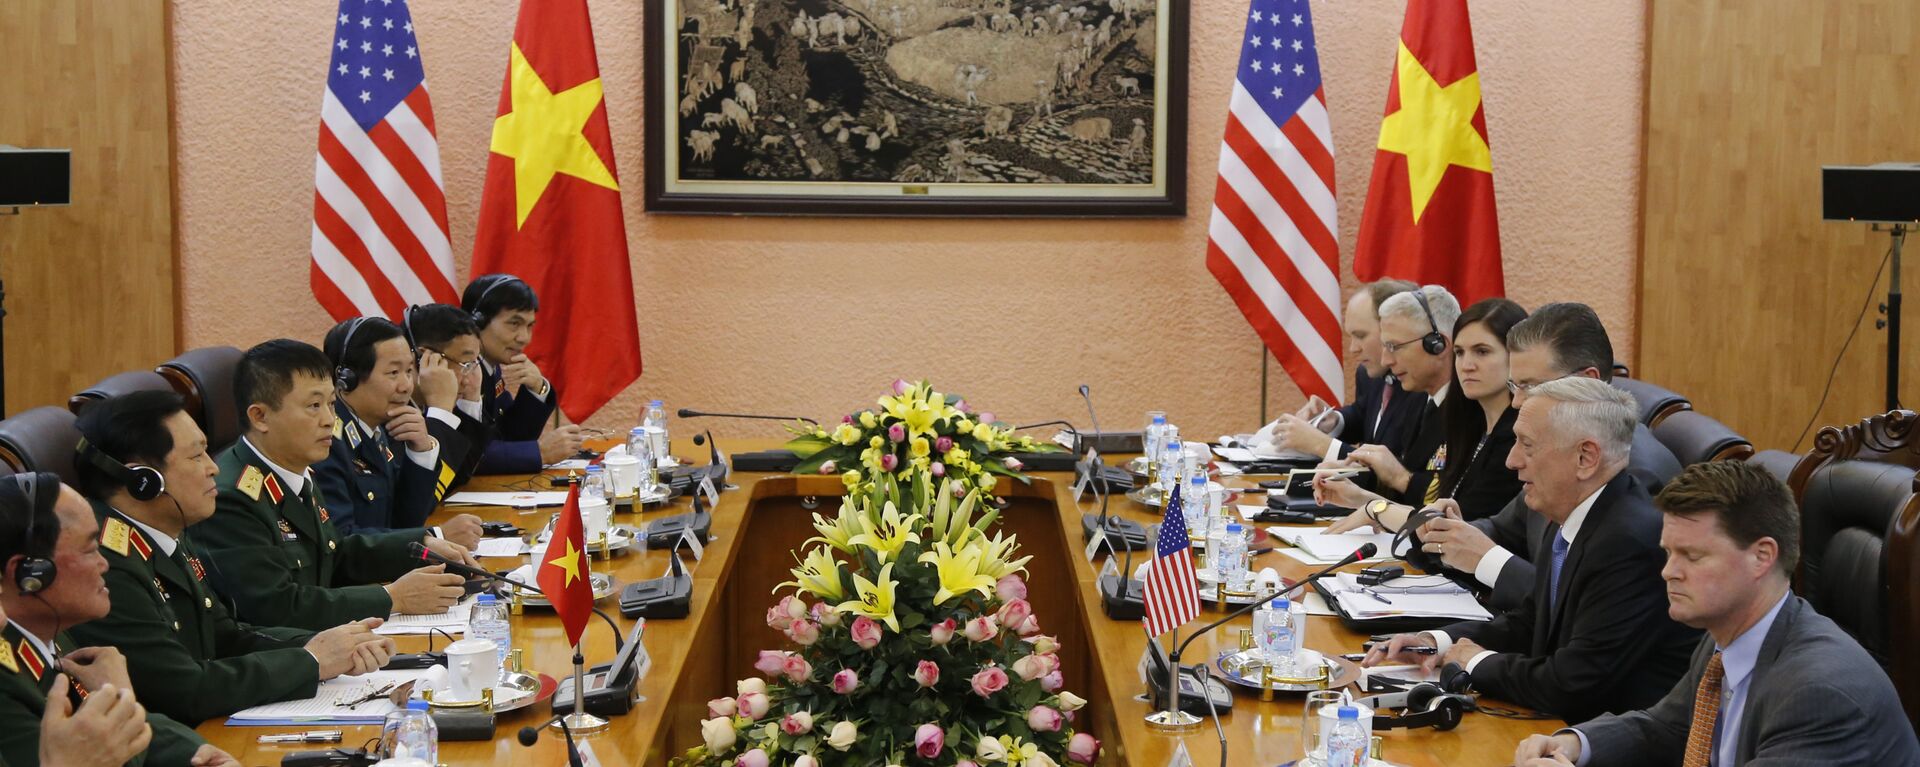 Bộ trưởng Quốc phòng Mỹ Jim Mattis và Bộ trưởng Quốc phòng Việt Nam Ngô Xuân Lịch trong cuộc họp tại Hà Nội - Sputnik Việt Nam, 1920, 27.01.2018